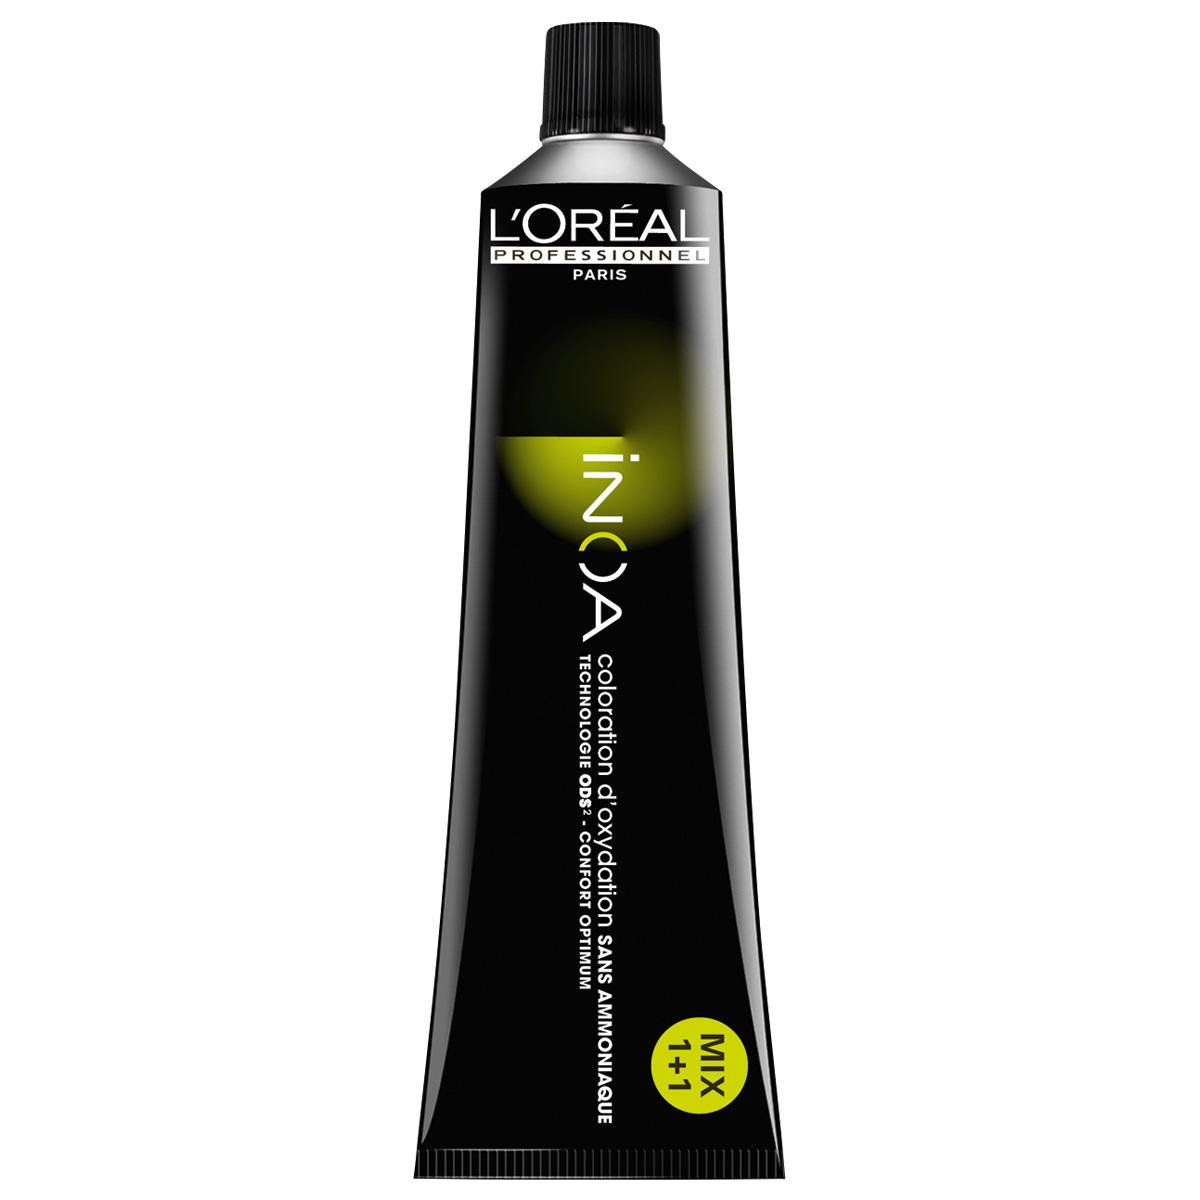 L'Oréal Professionnel Paris Coloration 6.0 Dark Blond Intensive, Tube 60 ml - 1